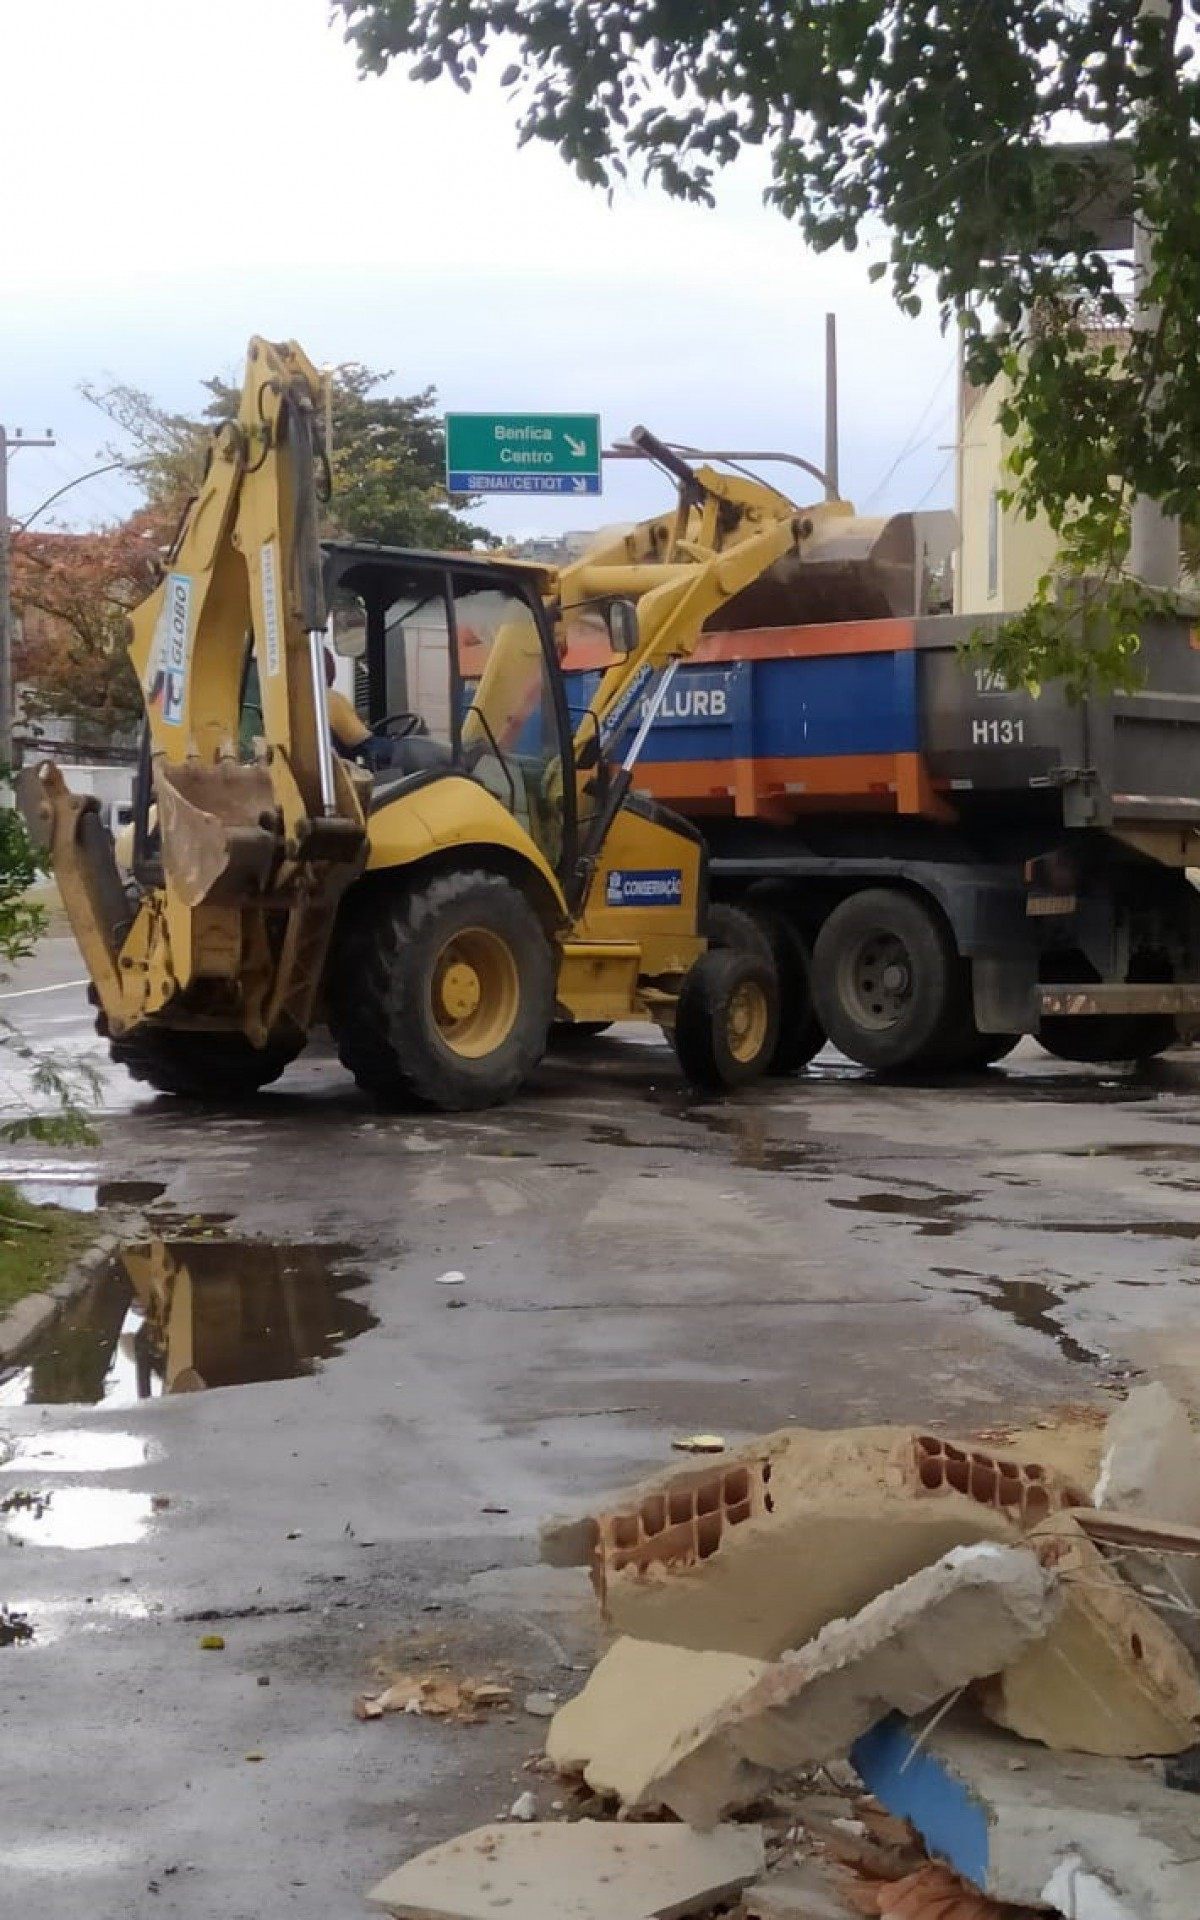 Equipes da Comlurb retiraram quatro caminhões de entulho da área
 - Divulgação/ Secretaria Municipal de Ordem Pública